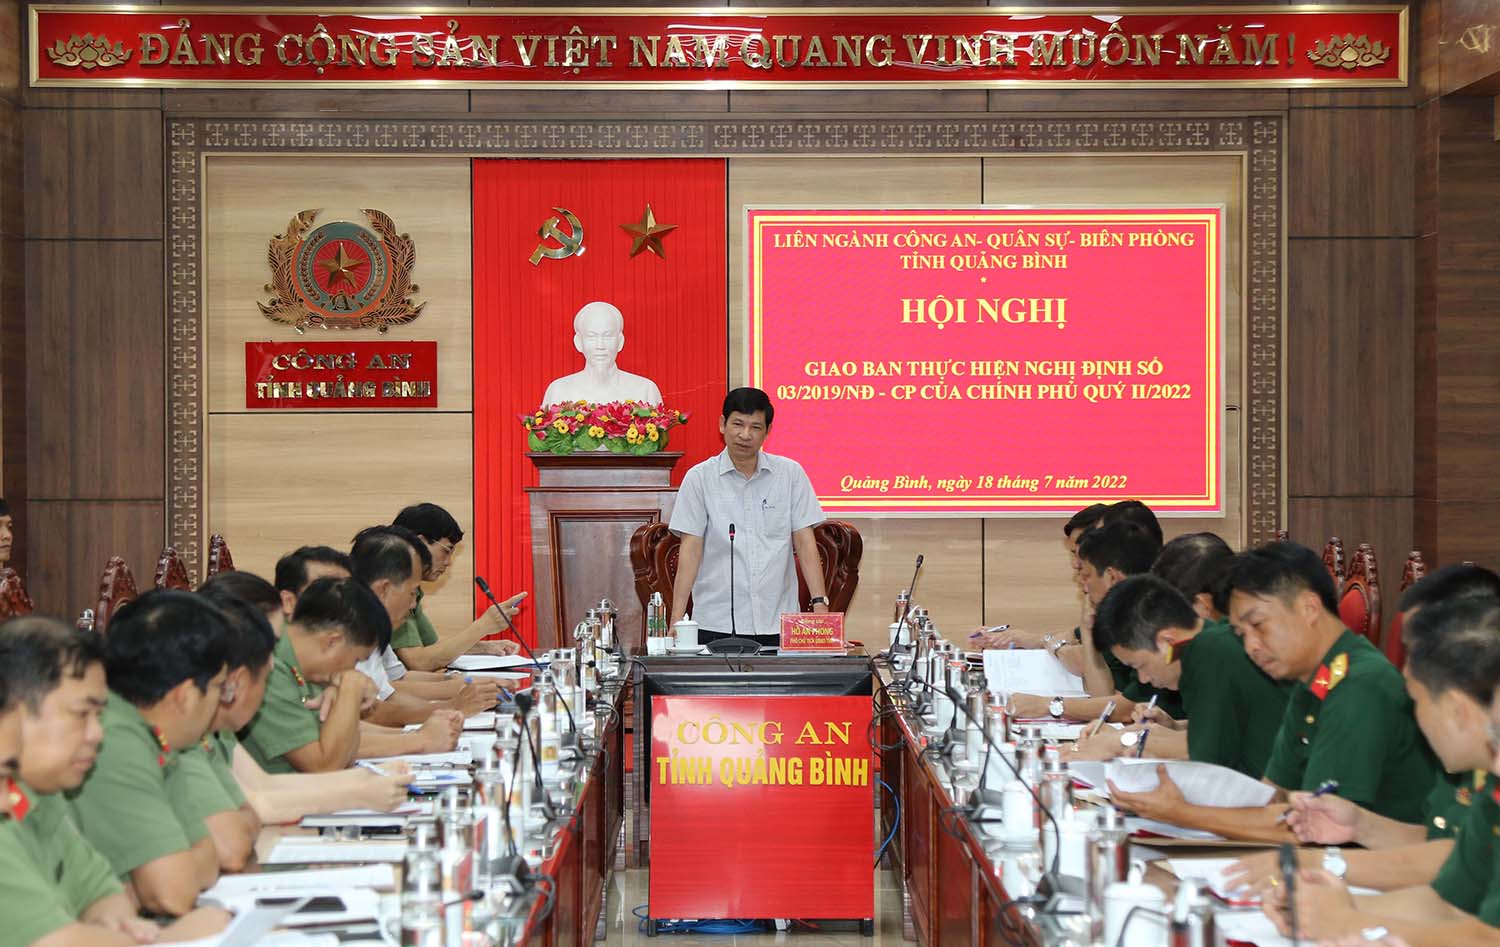 Đồng chí Hồ An Phong, Tỉnh ủy viên, Phó Chủ tịch UBND tỉnh phát biểu chỉ đạo hội nghị